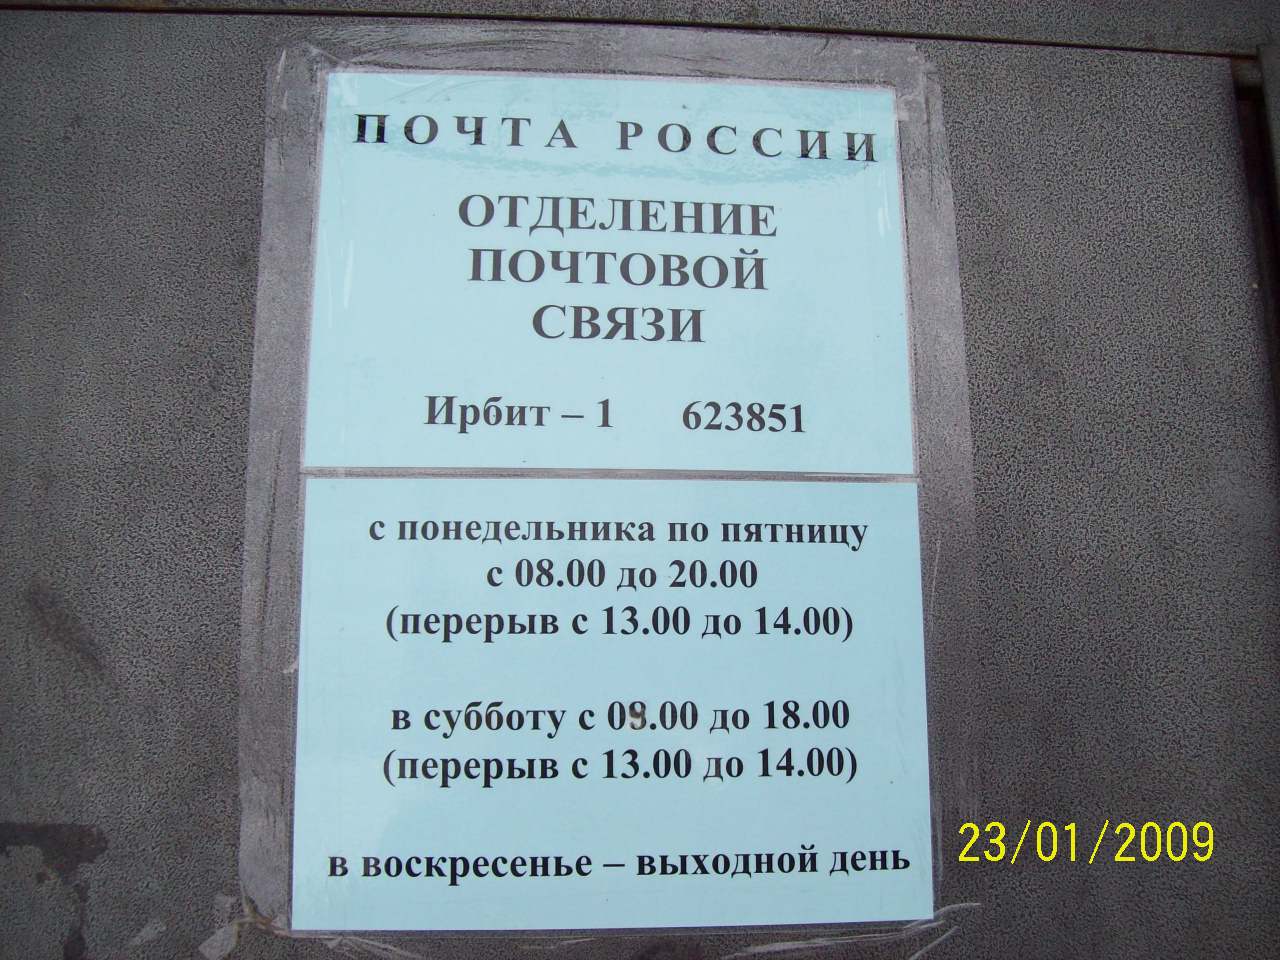 ВХОД, отделение почтовой связи 623851, Свердловская обл., Ирбит